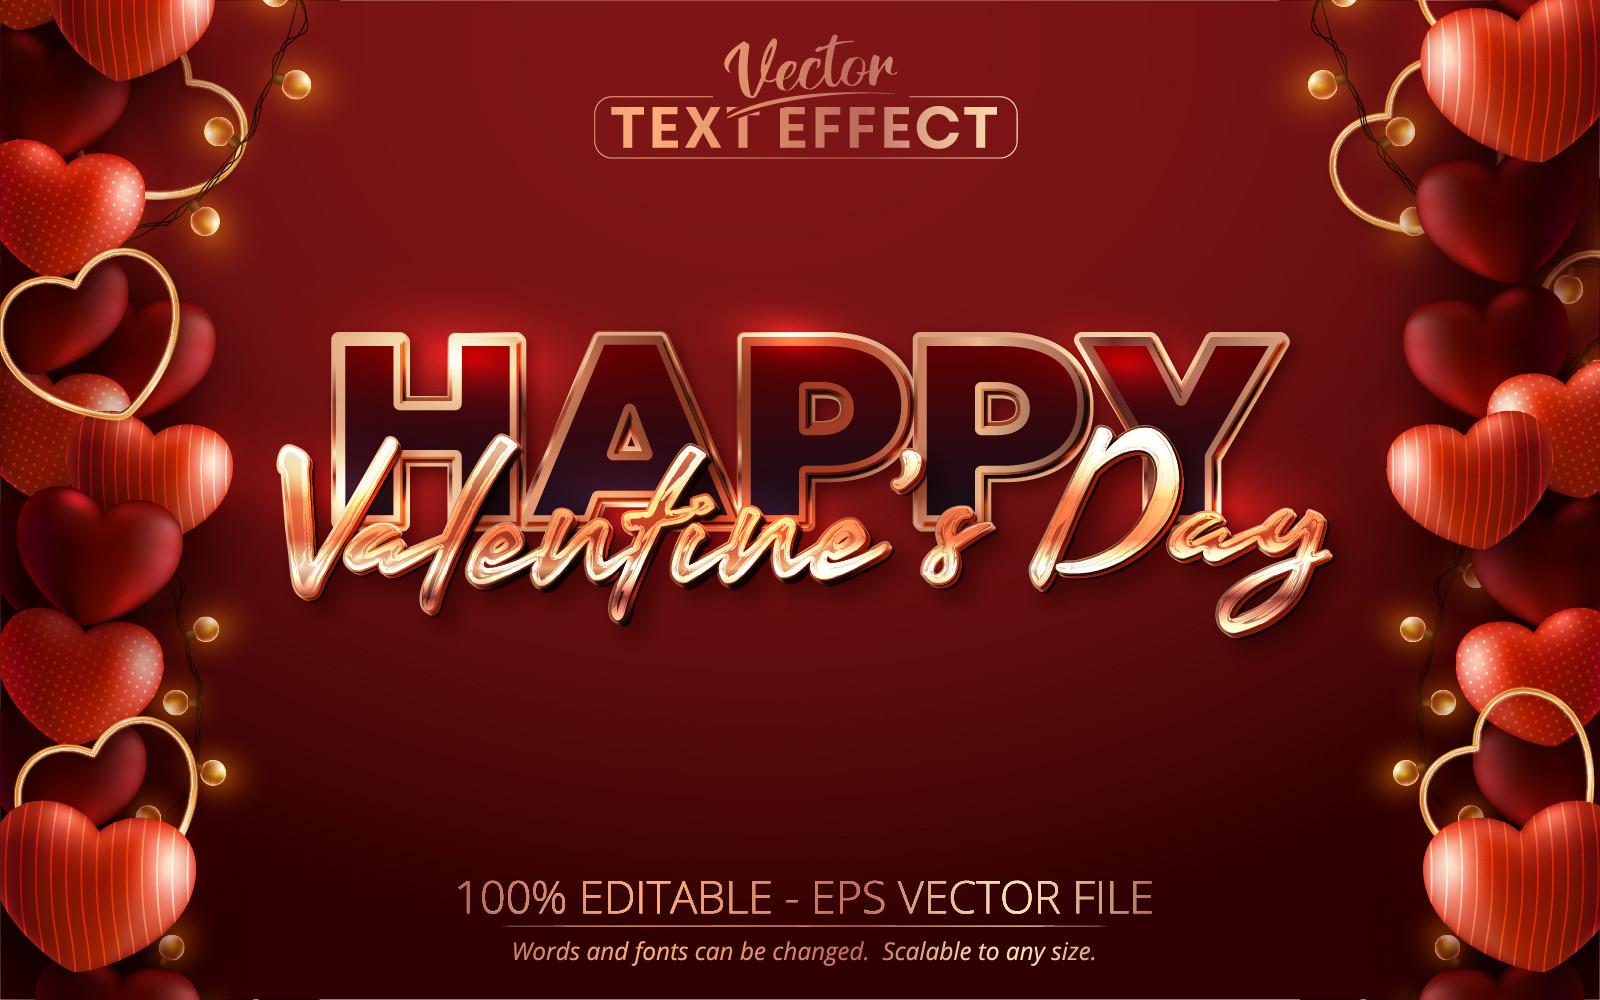 Golden Text Effect, Valentine's Day